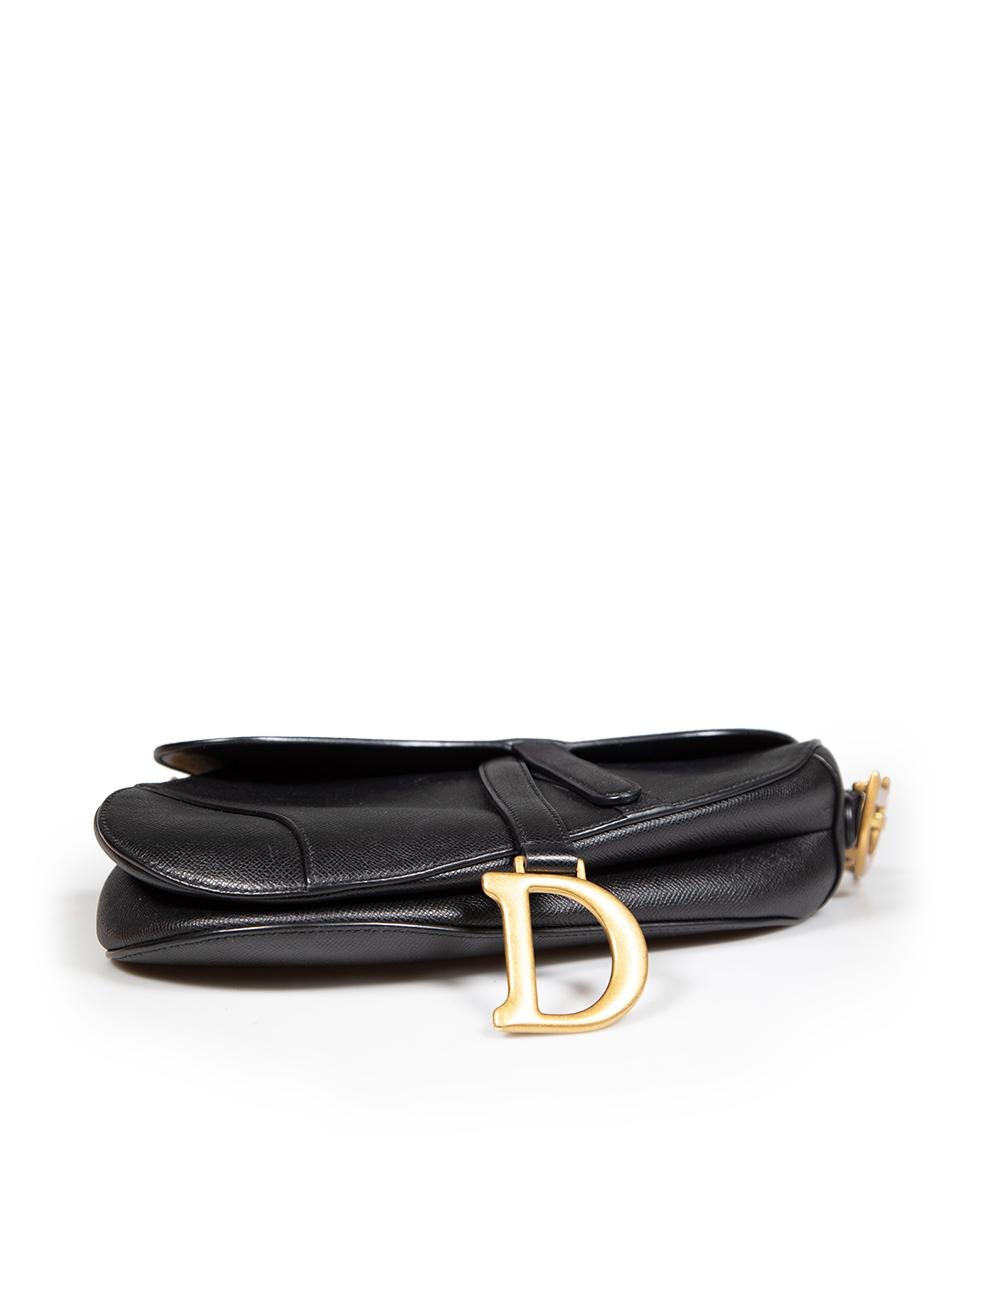 Dior Black Calfskin Saddle Bag For Sale 1